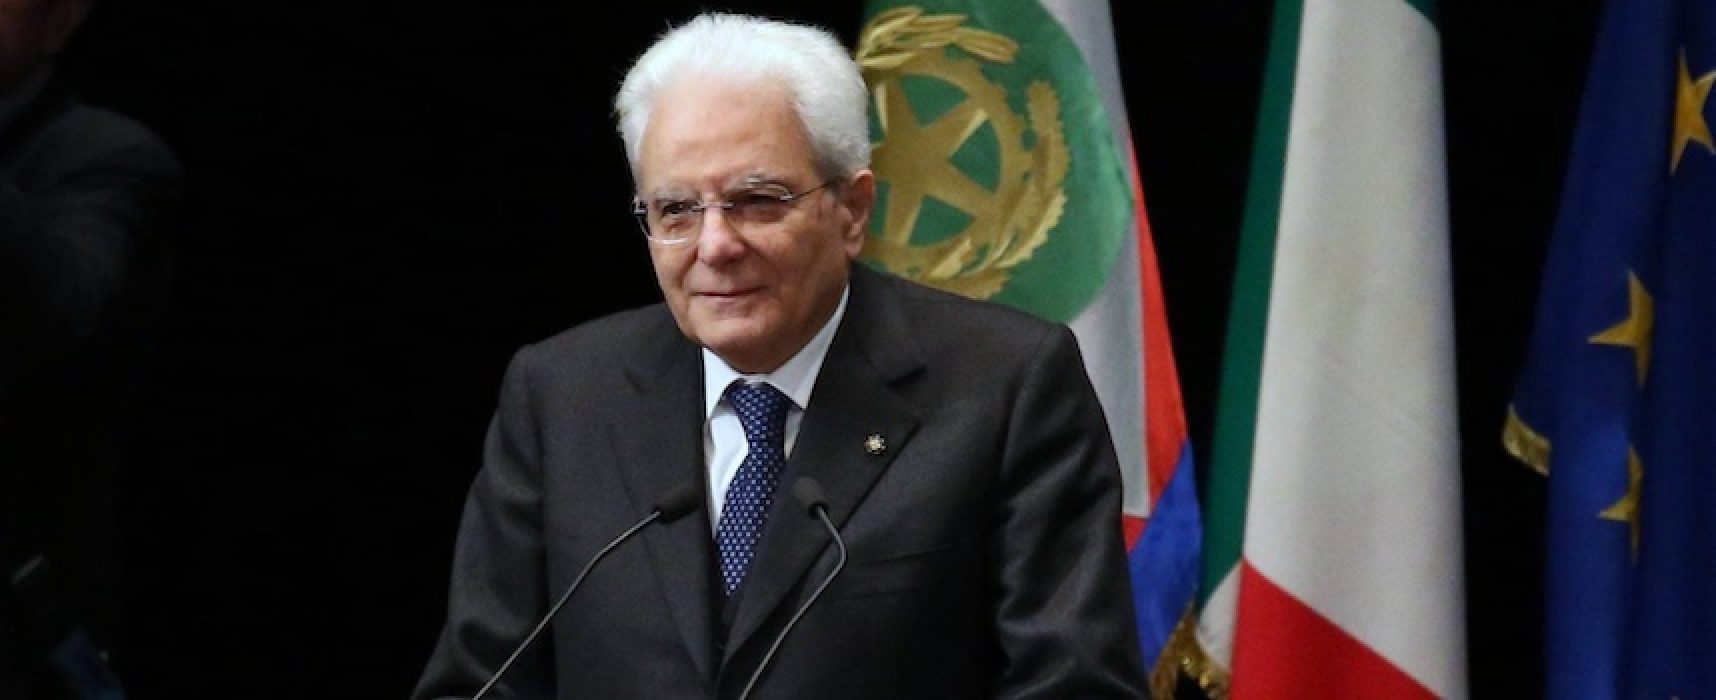 Presidenza della Repubblica: rielezione Mattarella, i commenti della politica biscegliese